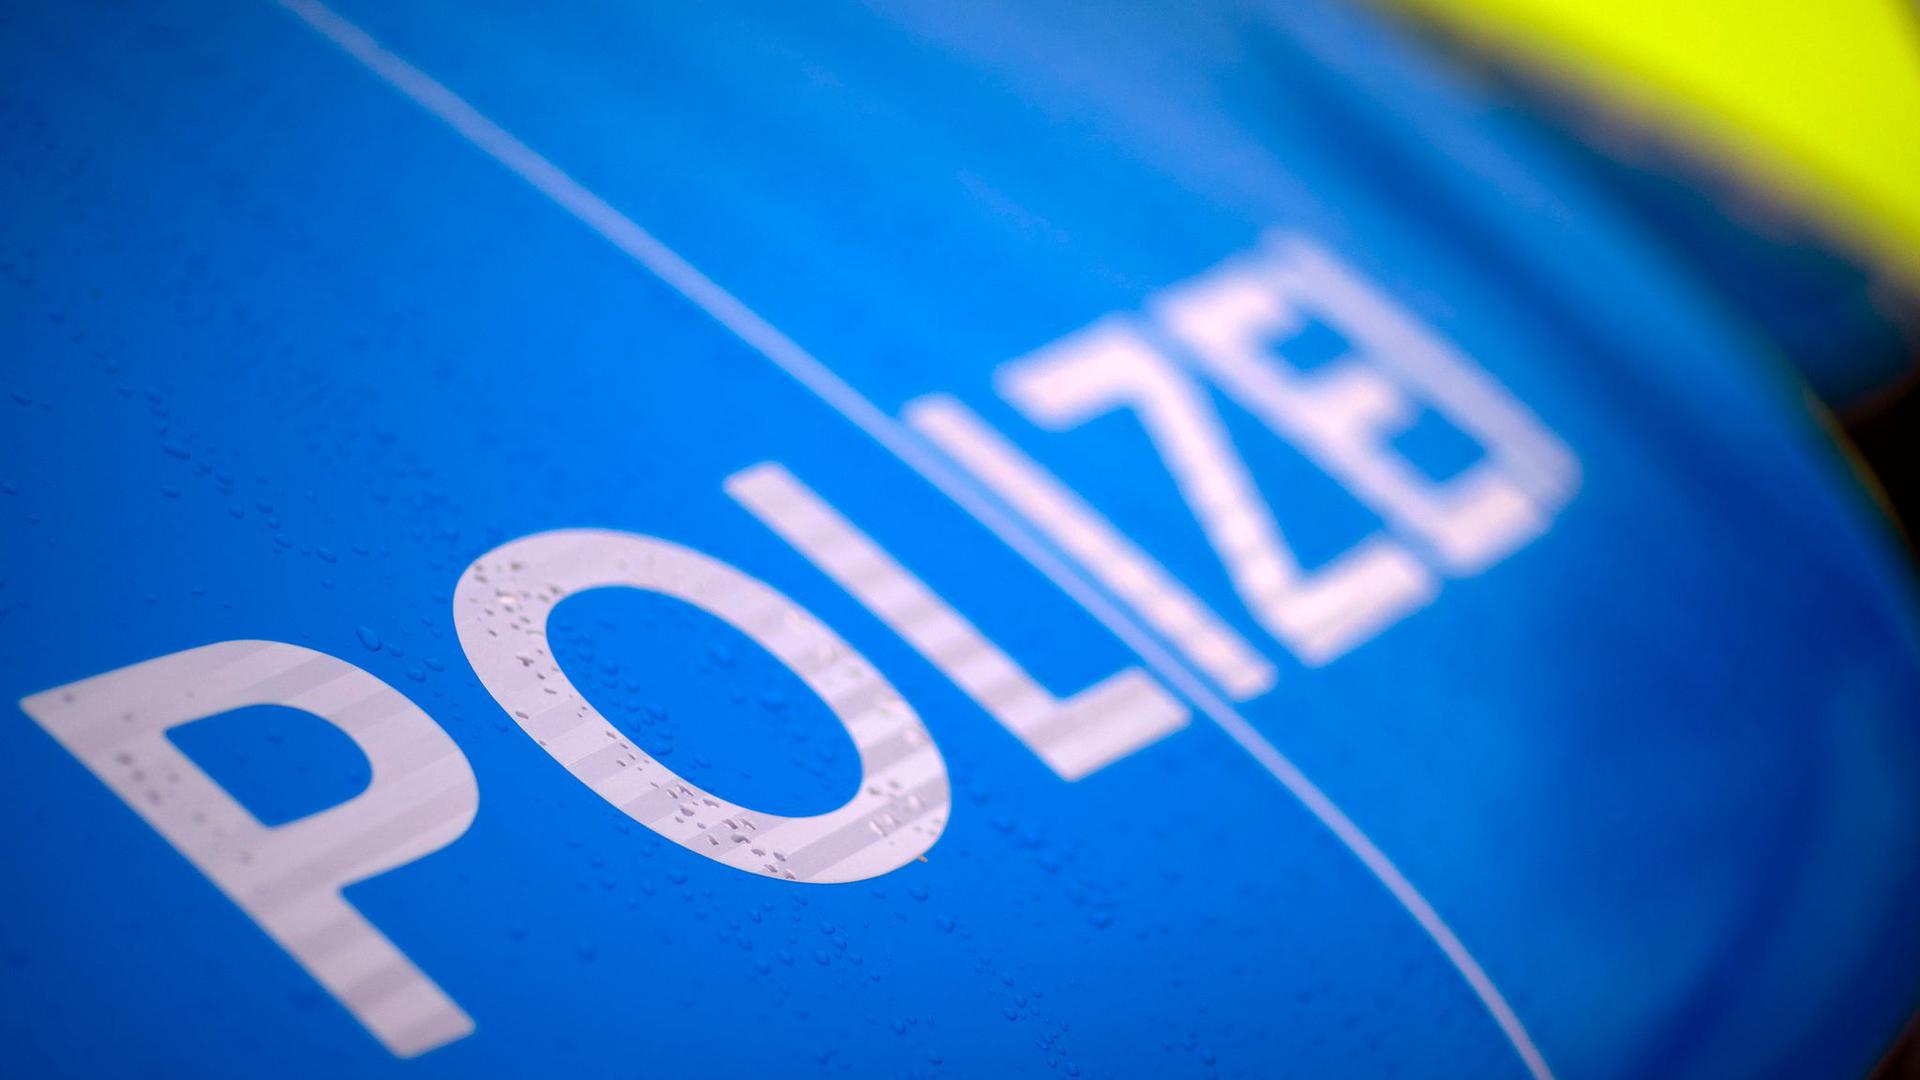 Der Schriftzug „Polizei“ steht auf einem Streifenwagen.